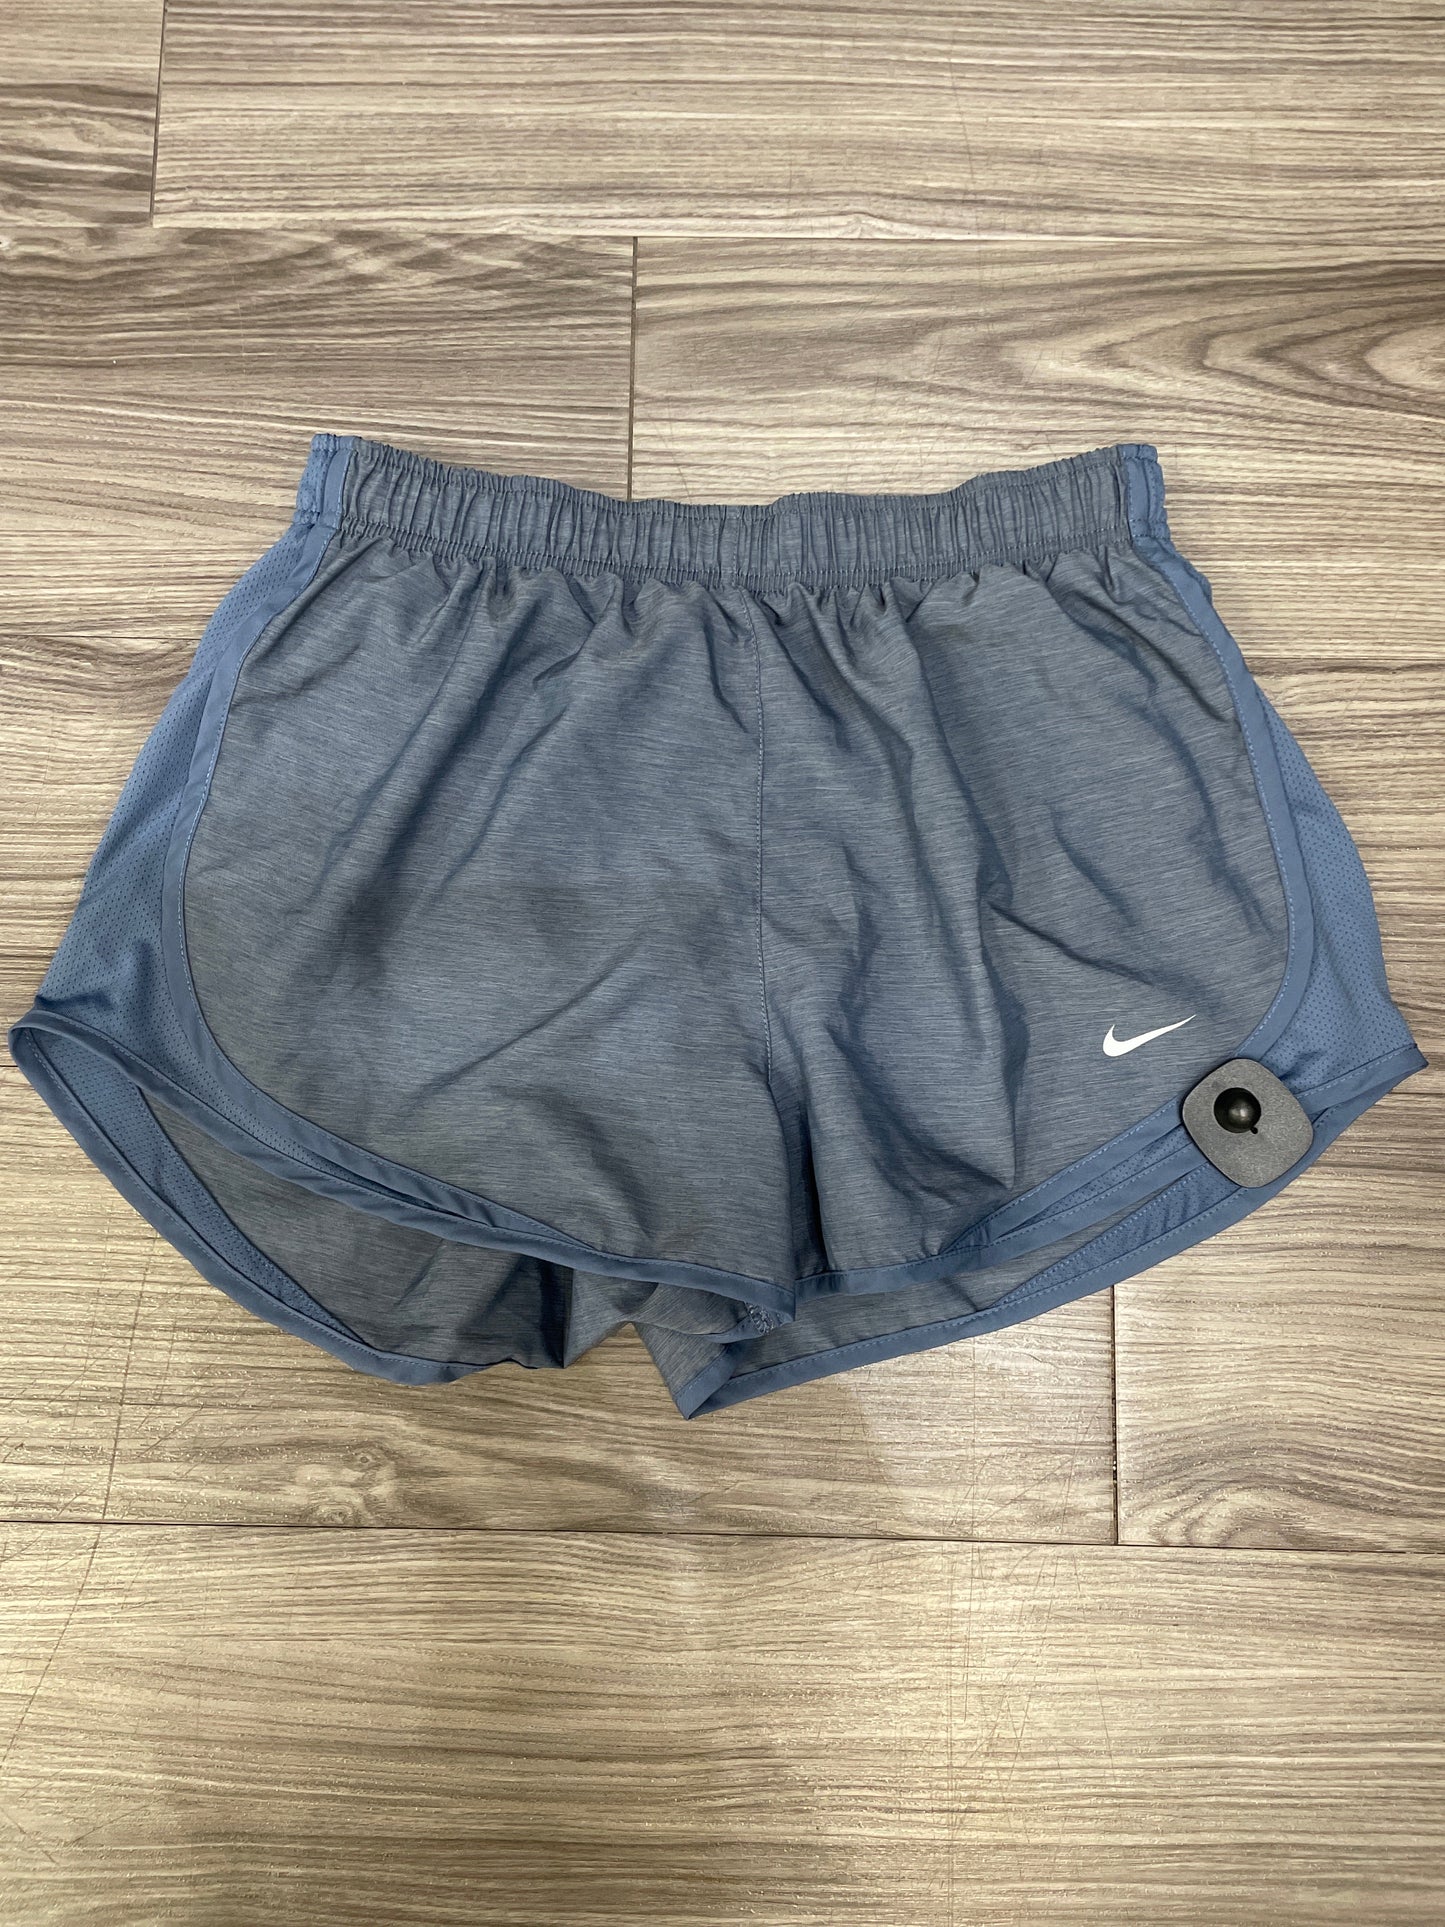 Blue Athletic Shorts Nike, Size L